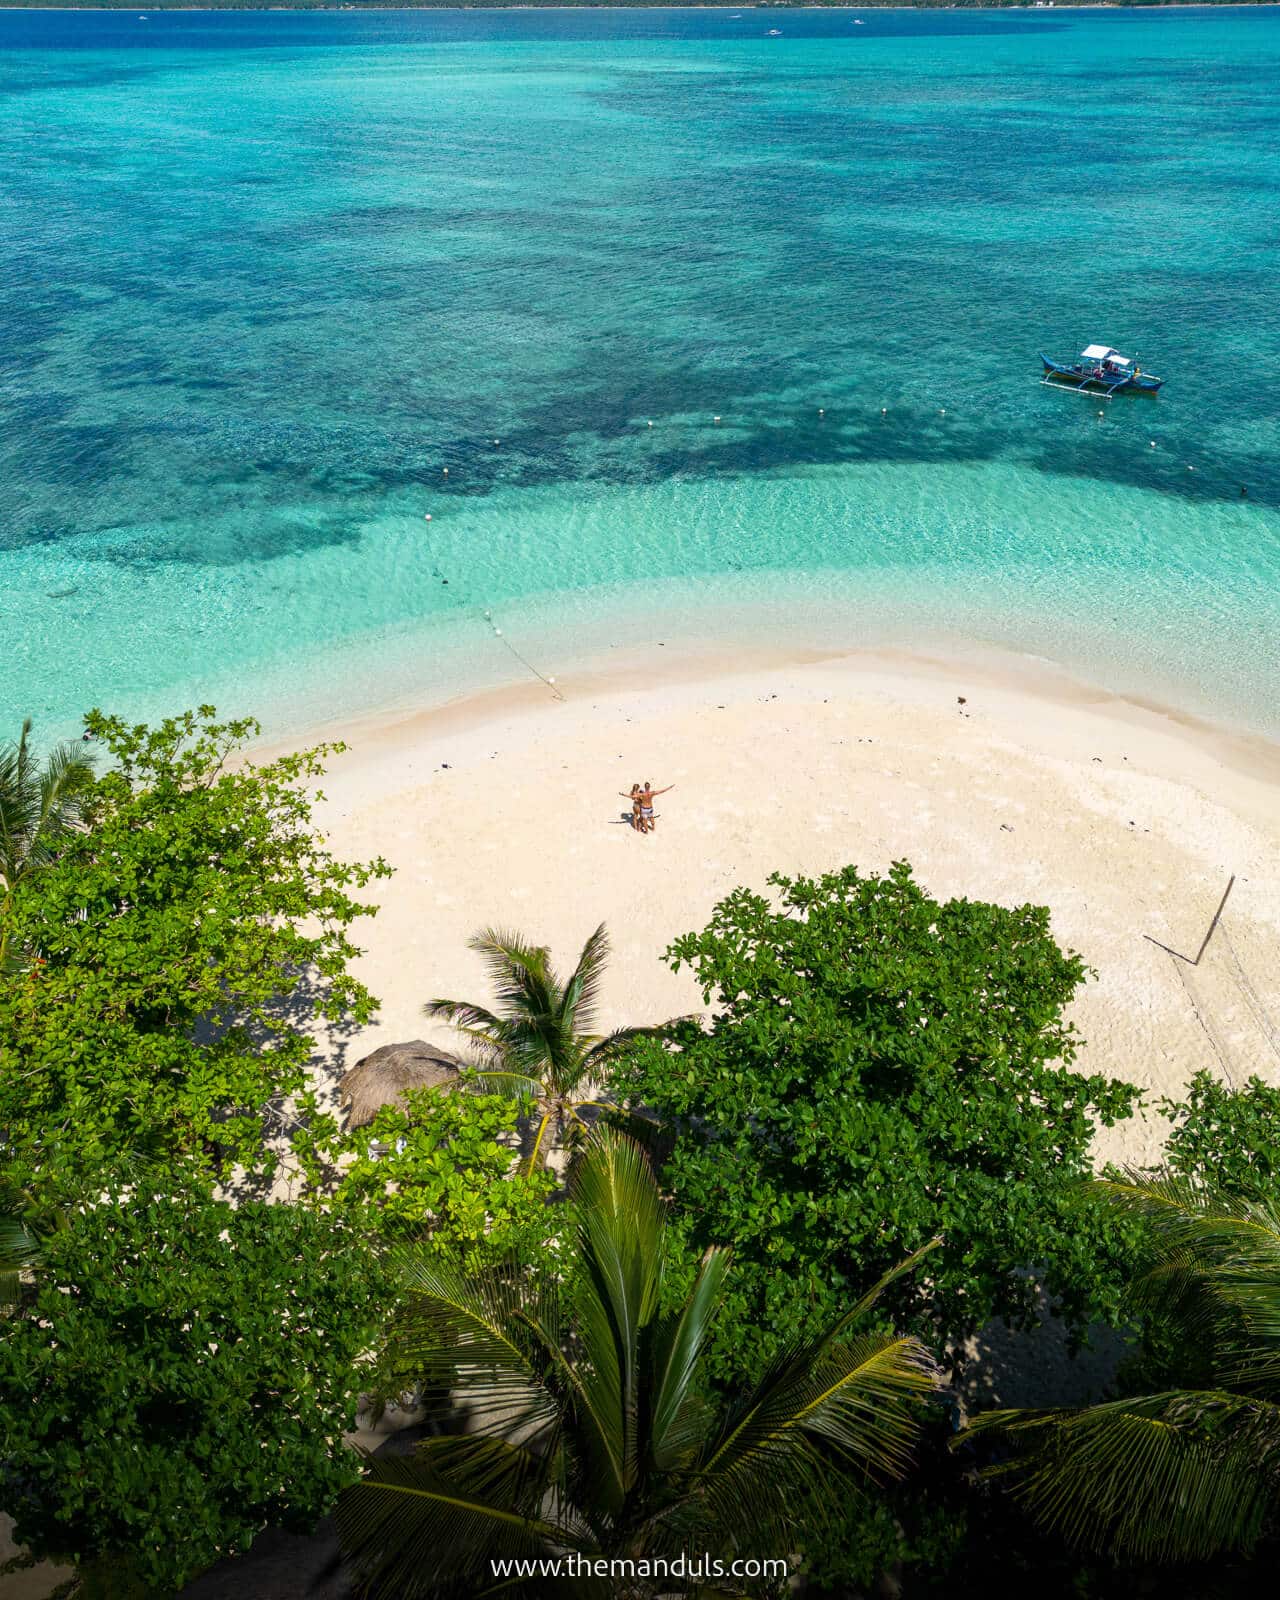 Best Siargao beaches - Guyam island beach